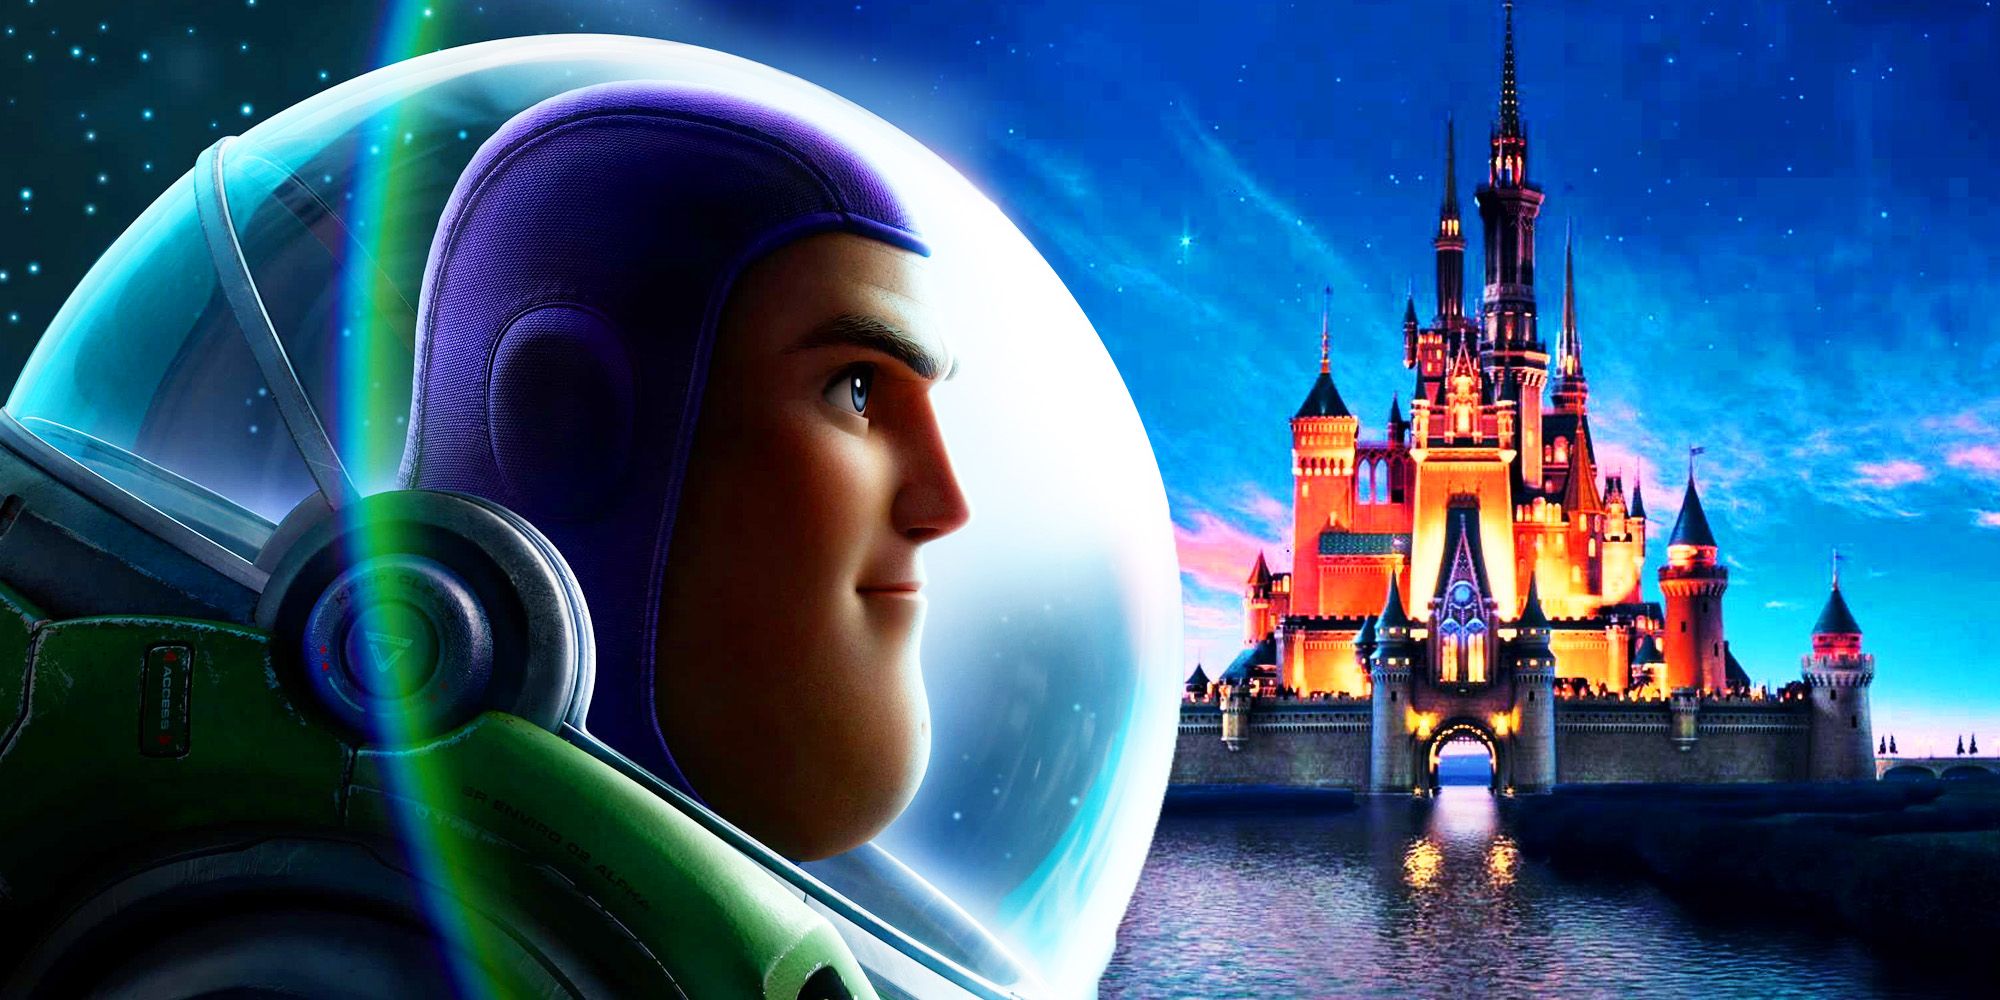 La cabeza de Buzz Lightyear superpuesta al castillo de Disney.